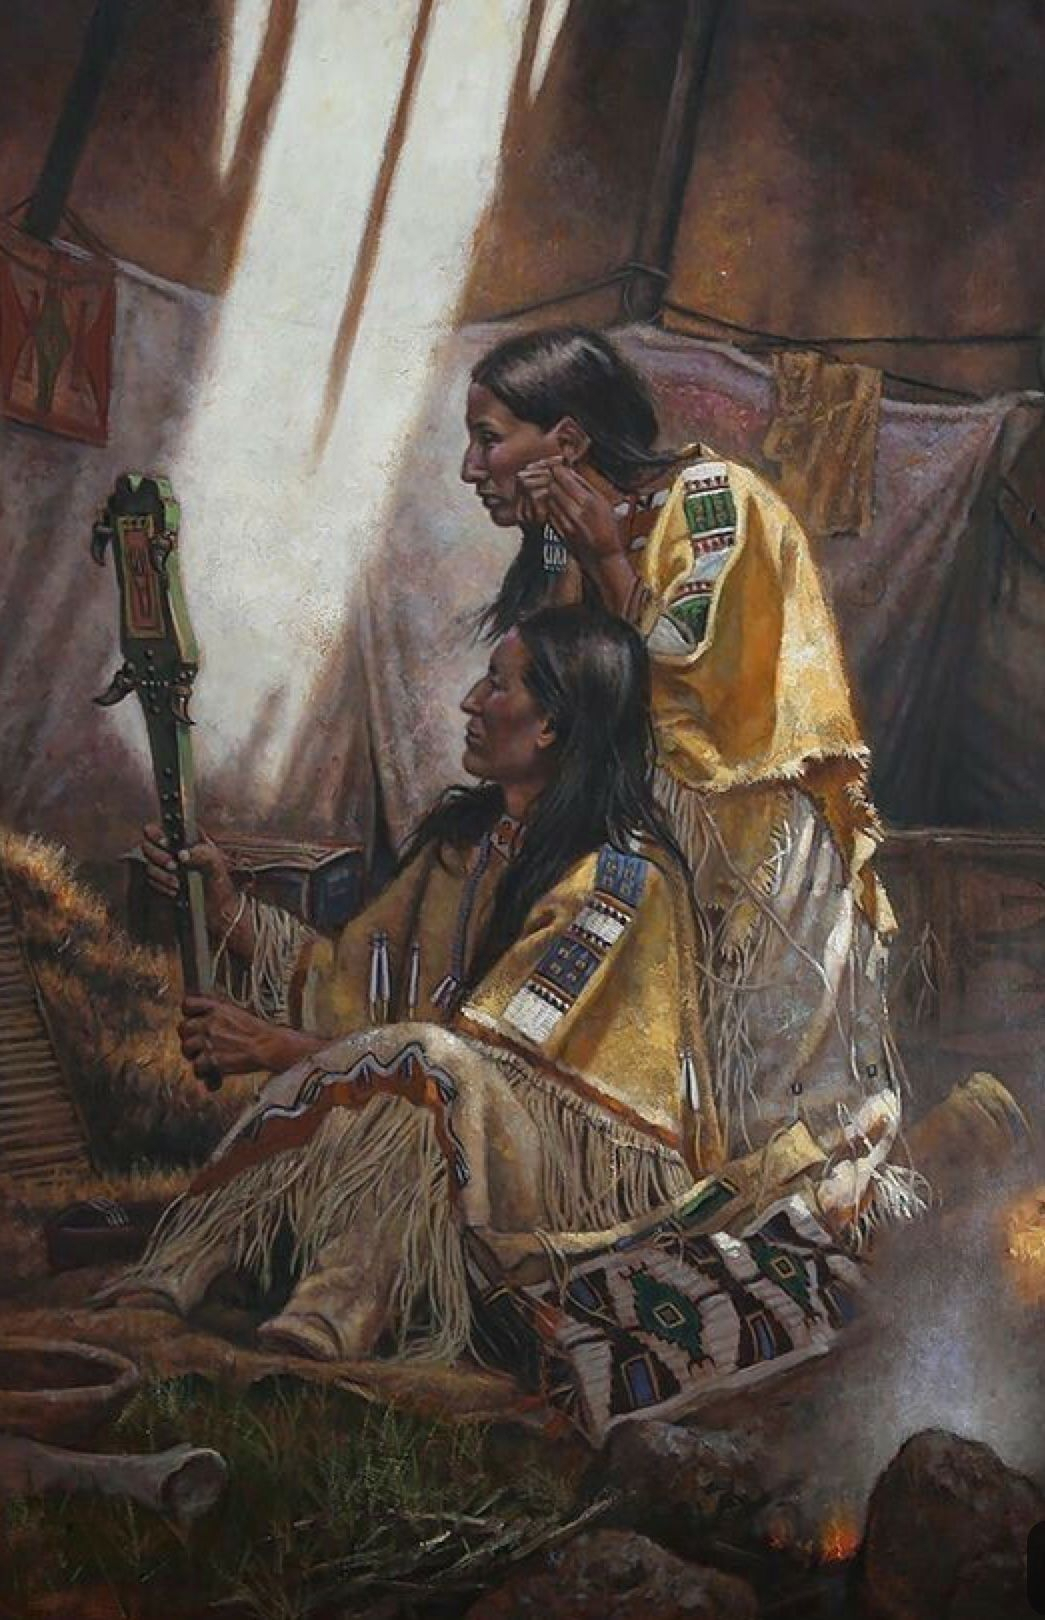 Amerindiens | Histoire Des Indiens D&amp;#039;Amérique, Amerindien destiné Indiens D Amériques